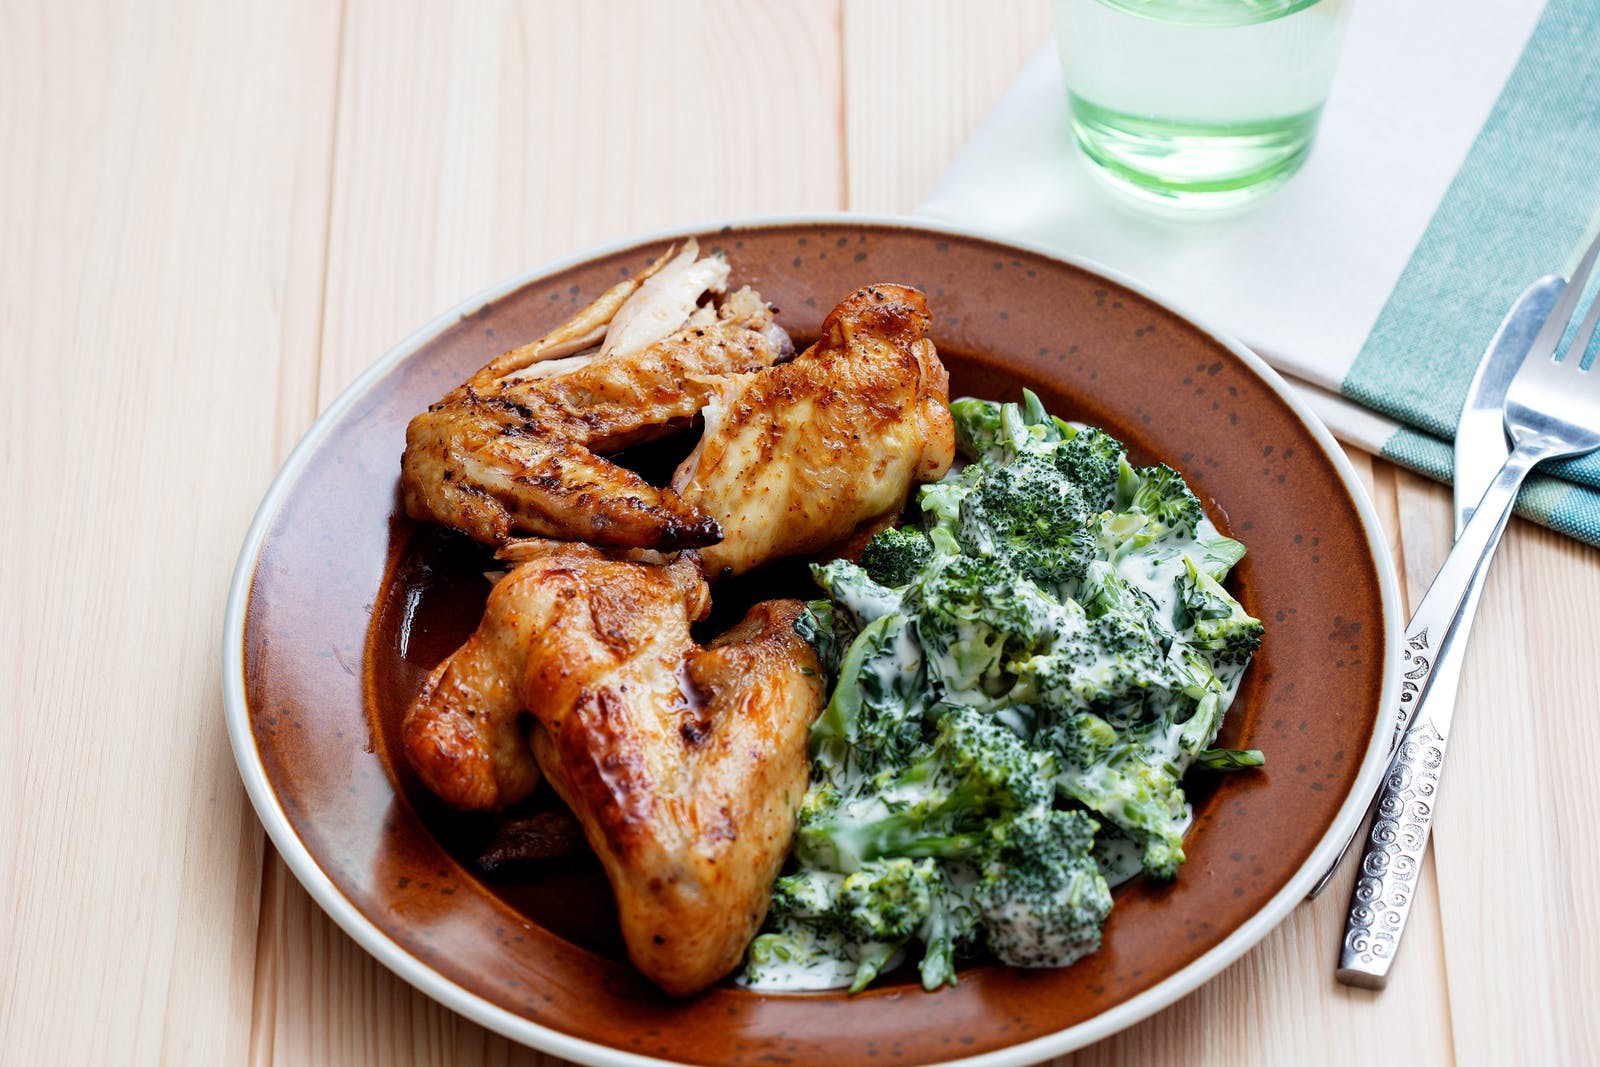 Diet chicken and broccoli